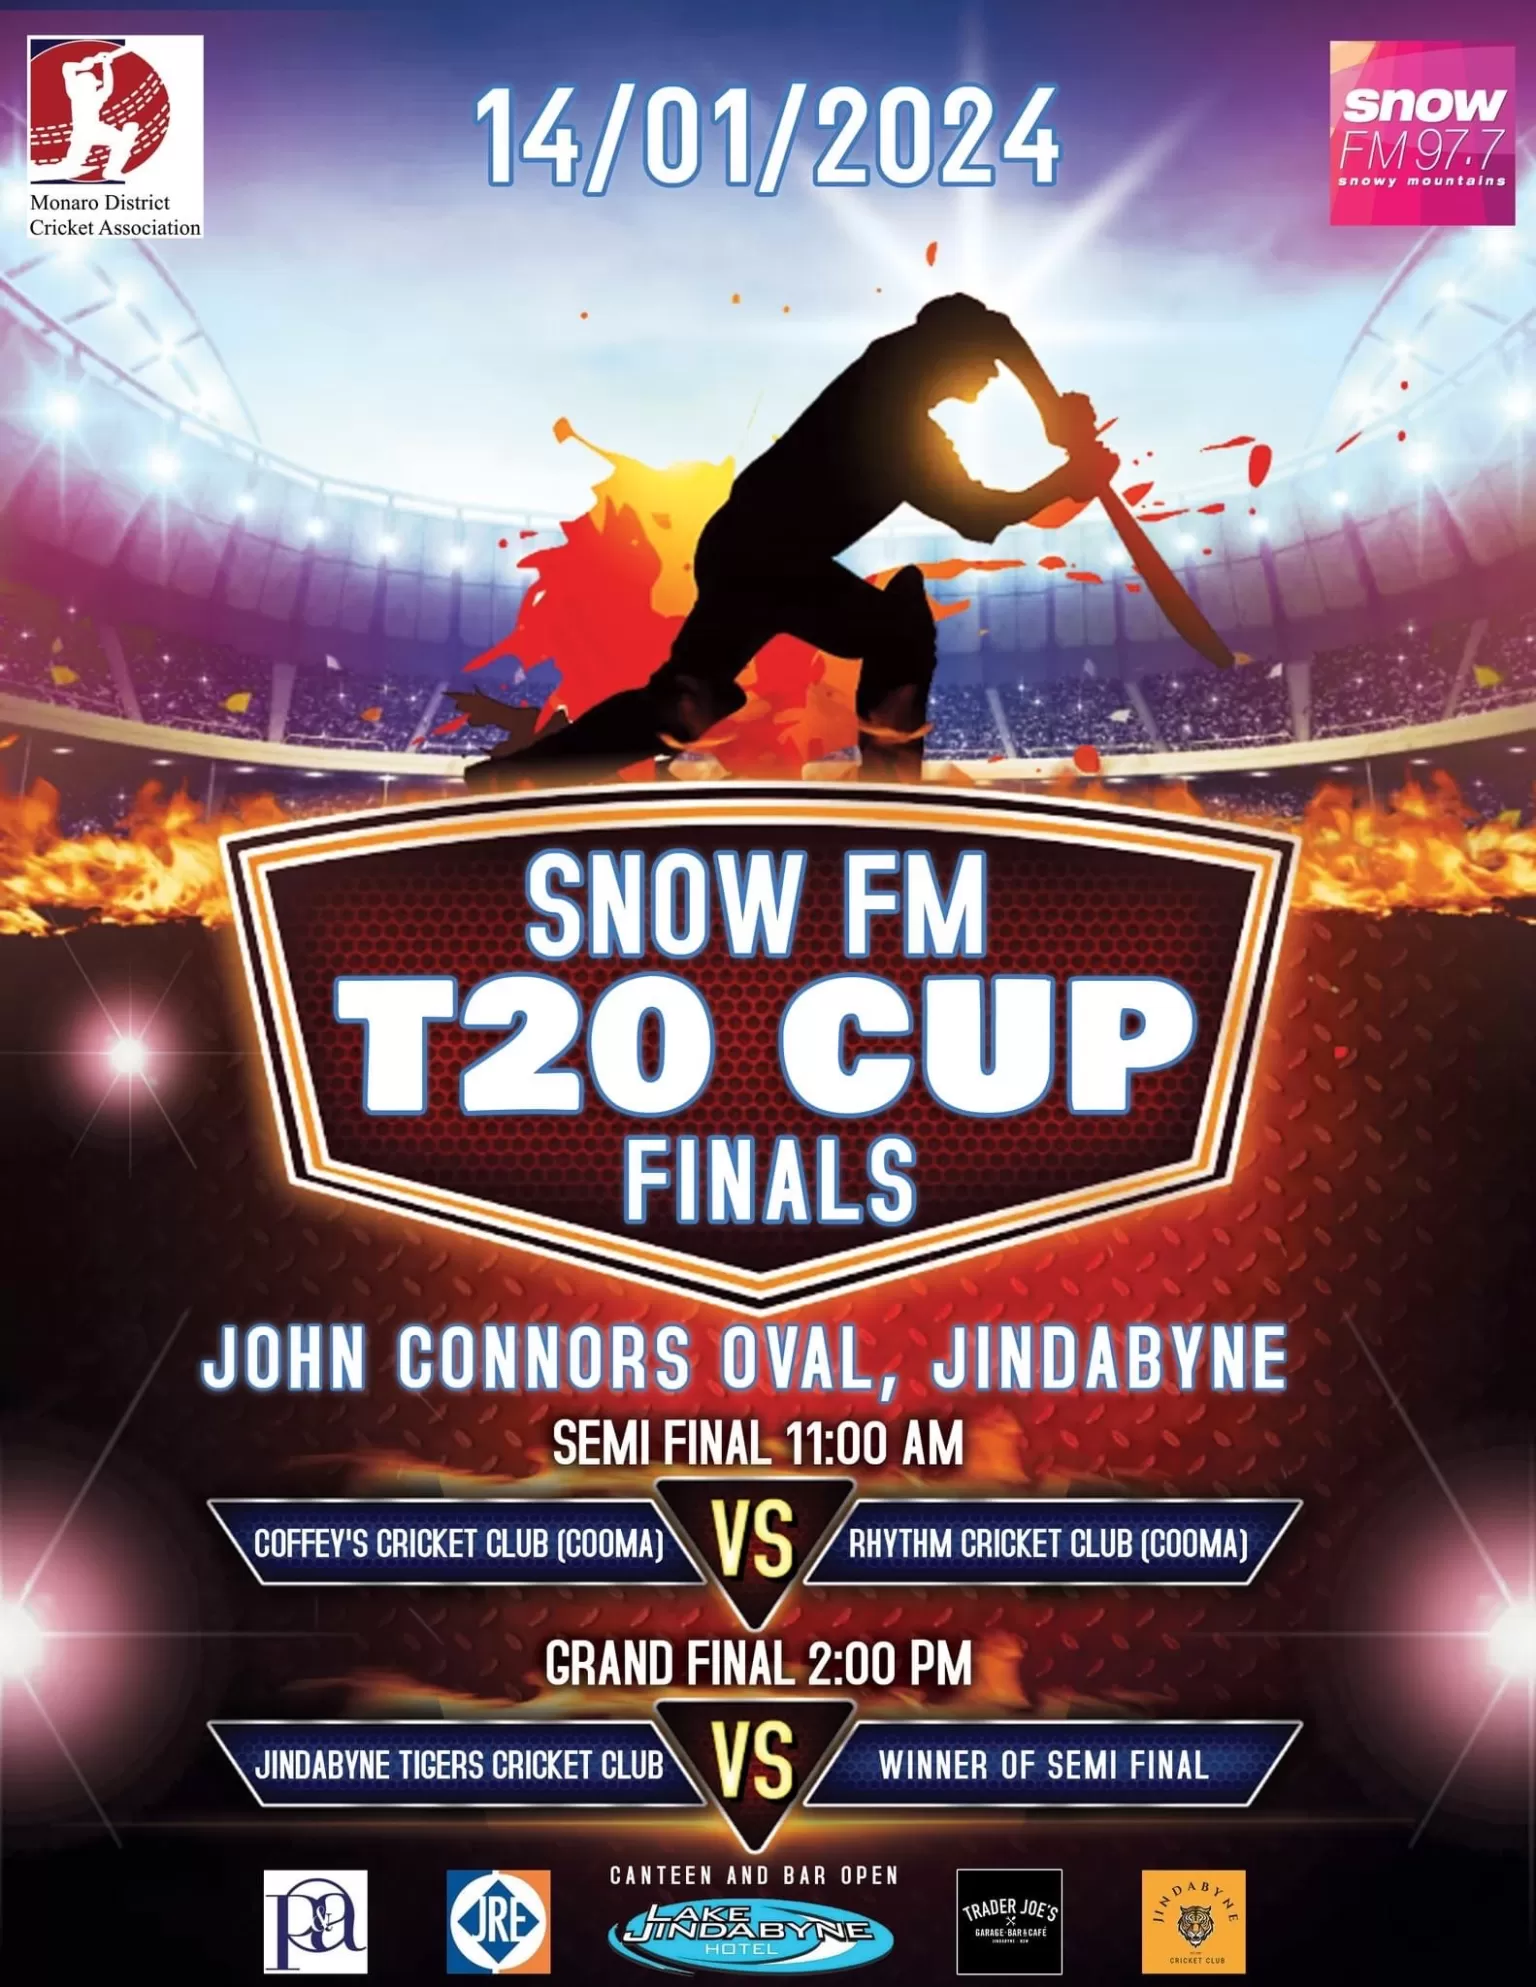 Snow FM T20 cup finals image